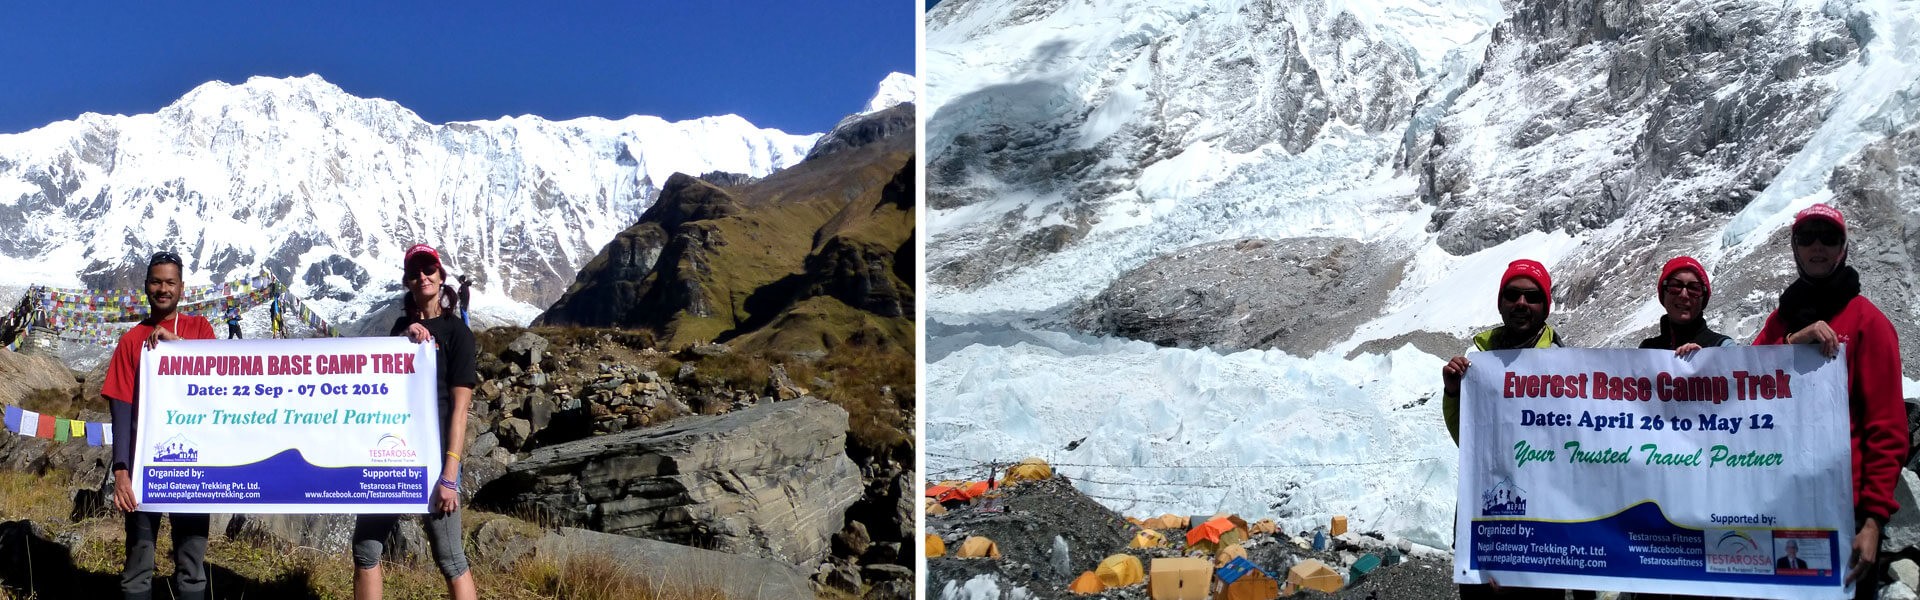 Annapurna Base Camp Trek v/s Everest Base Camp Trek